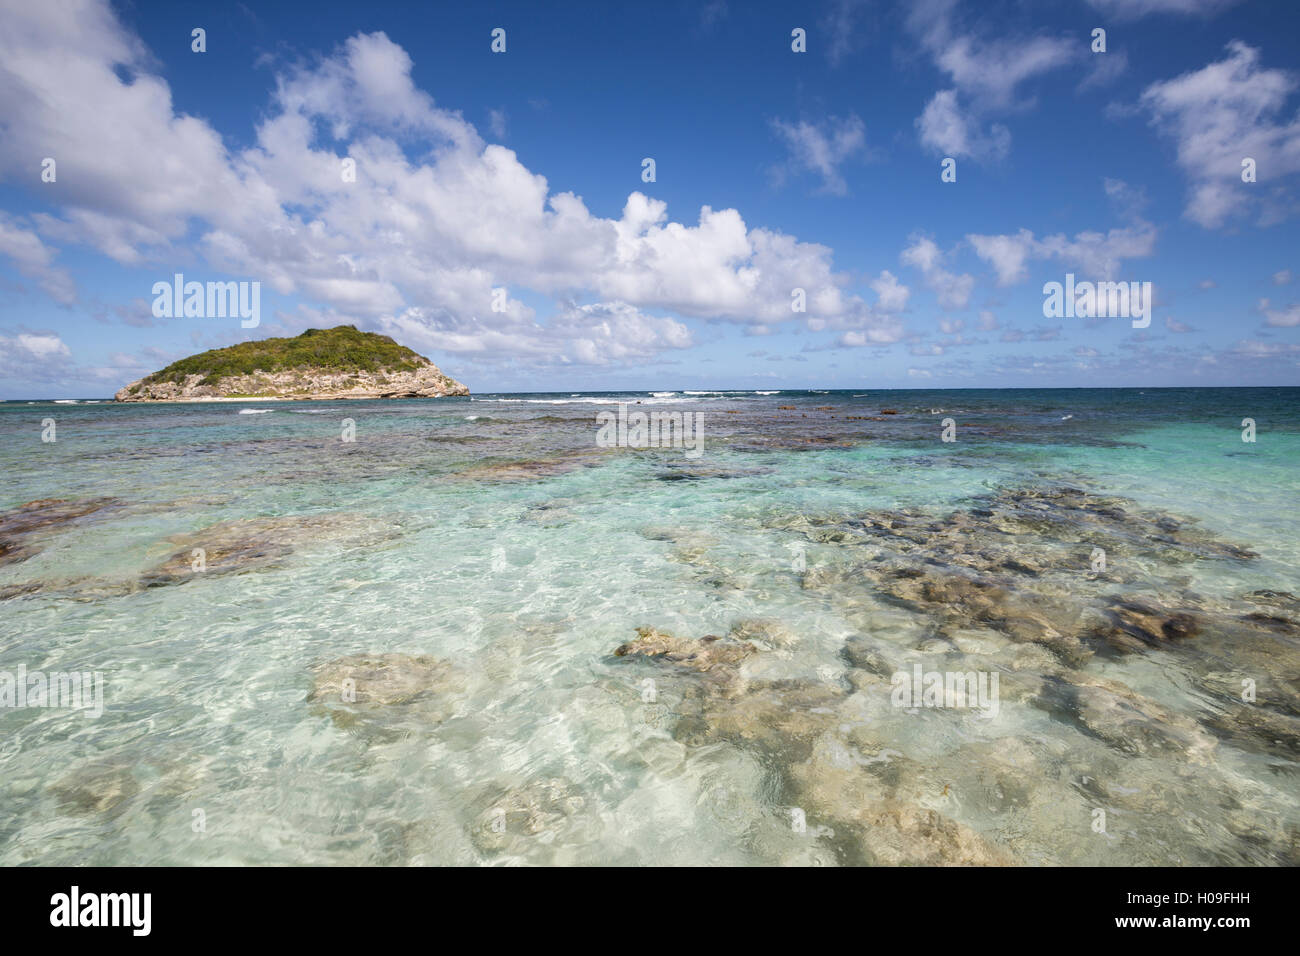 Ciel bleu et nuages encadrent la mer turquoise des Caraïbes, Half Moon Bay, Antigua-et-Barbuda, Antilles, îles sous le vent Banque D'Images